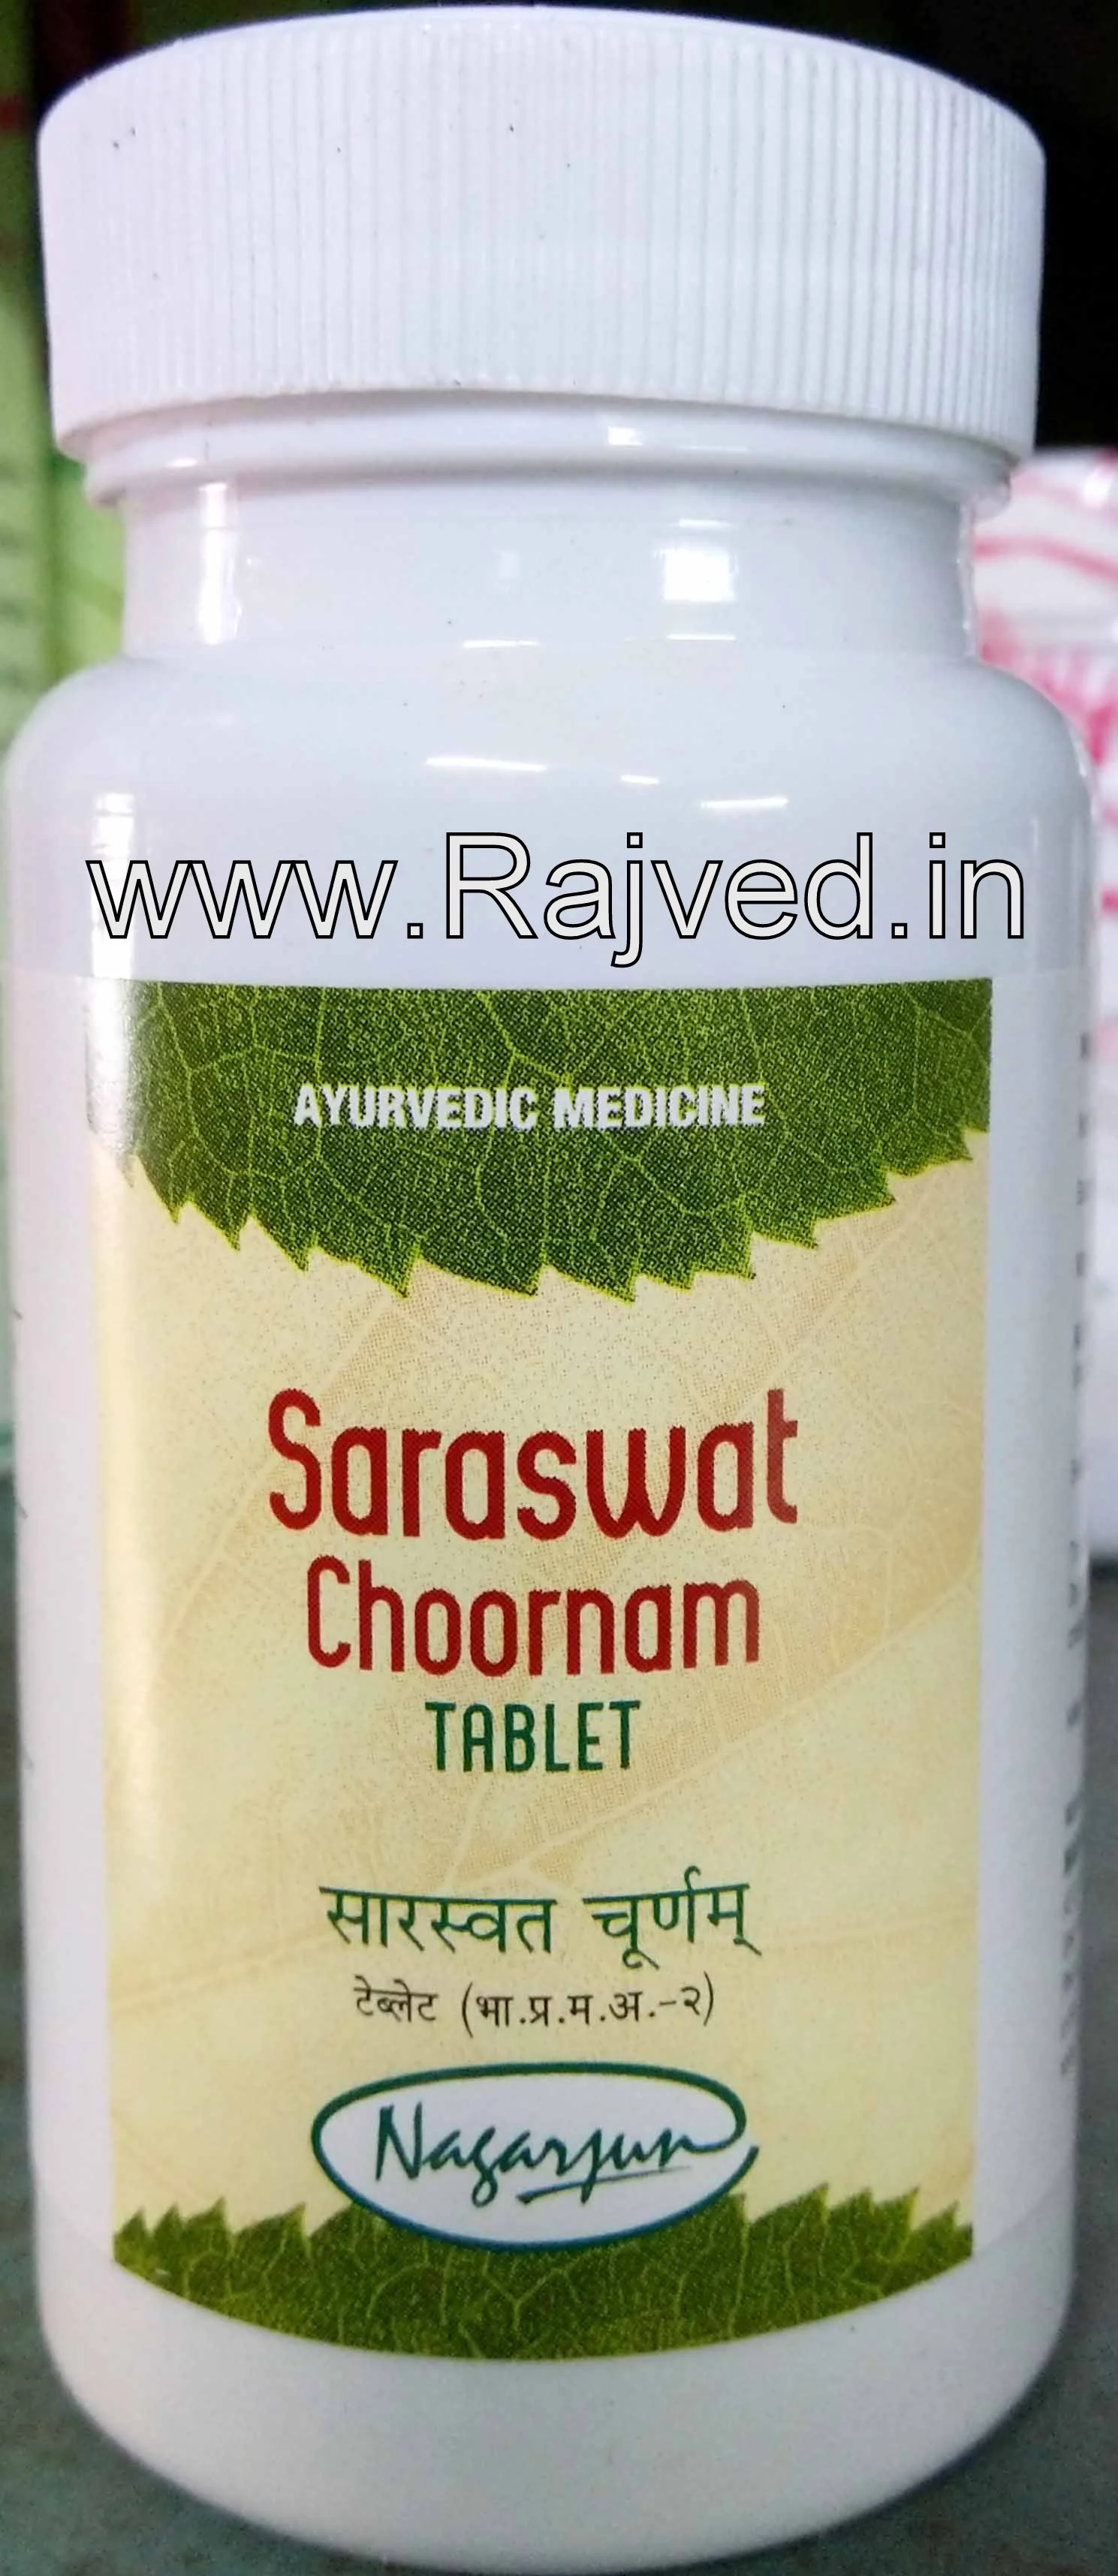 saraswat choornam tablet 1000 gm upto 20% off free shipping nagarjun pharma gujarat